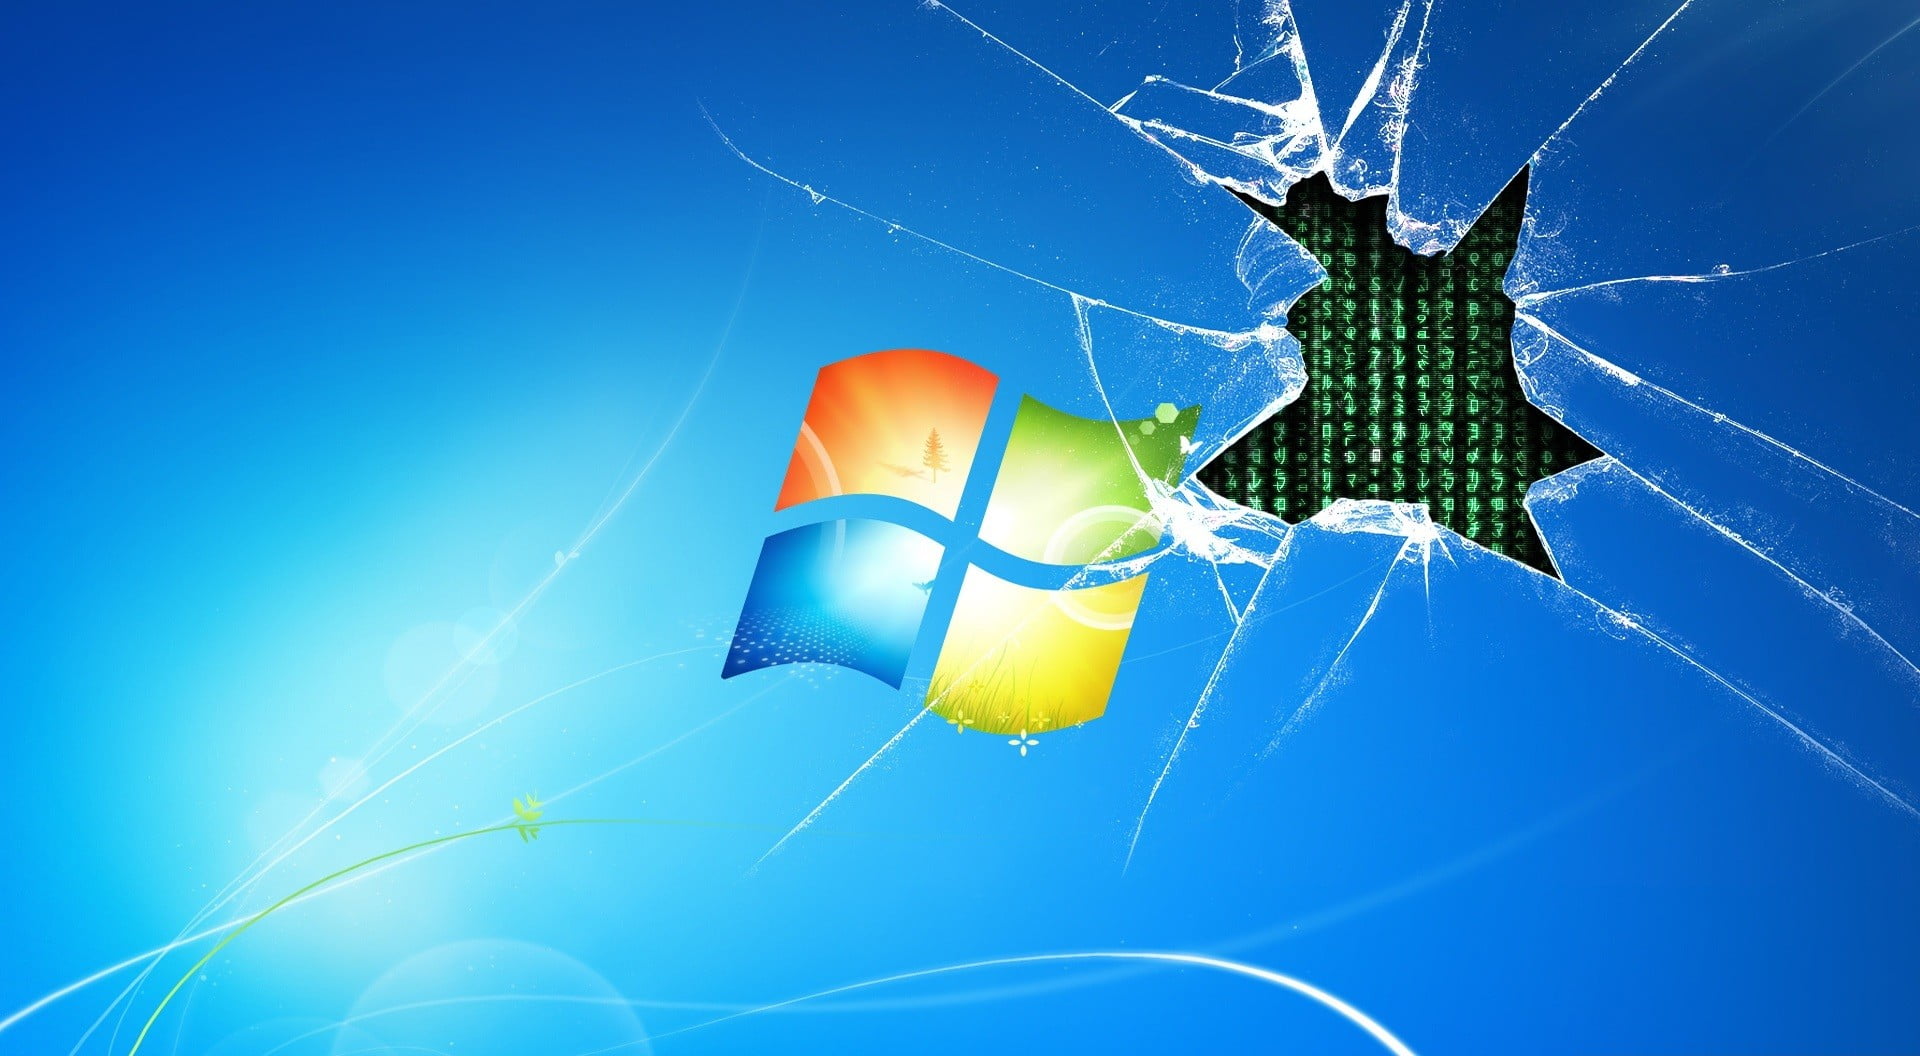 Microsoft logo, Windows 7, blue, invertebrate, nature, close-up